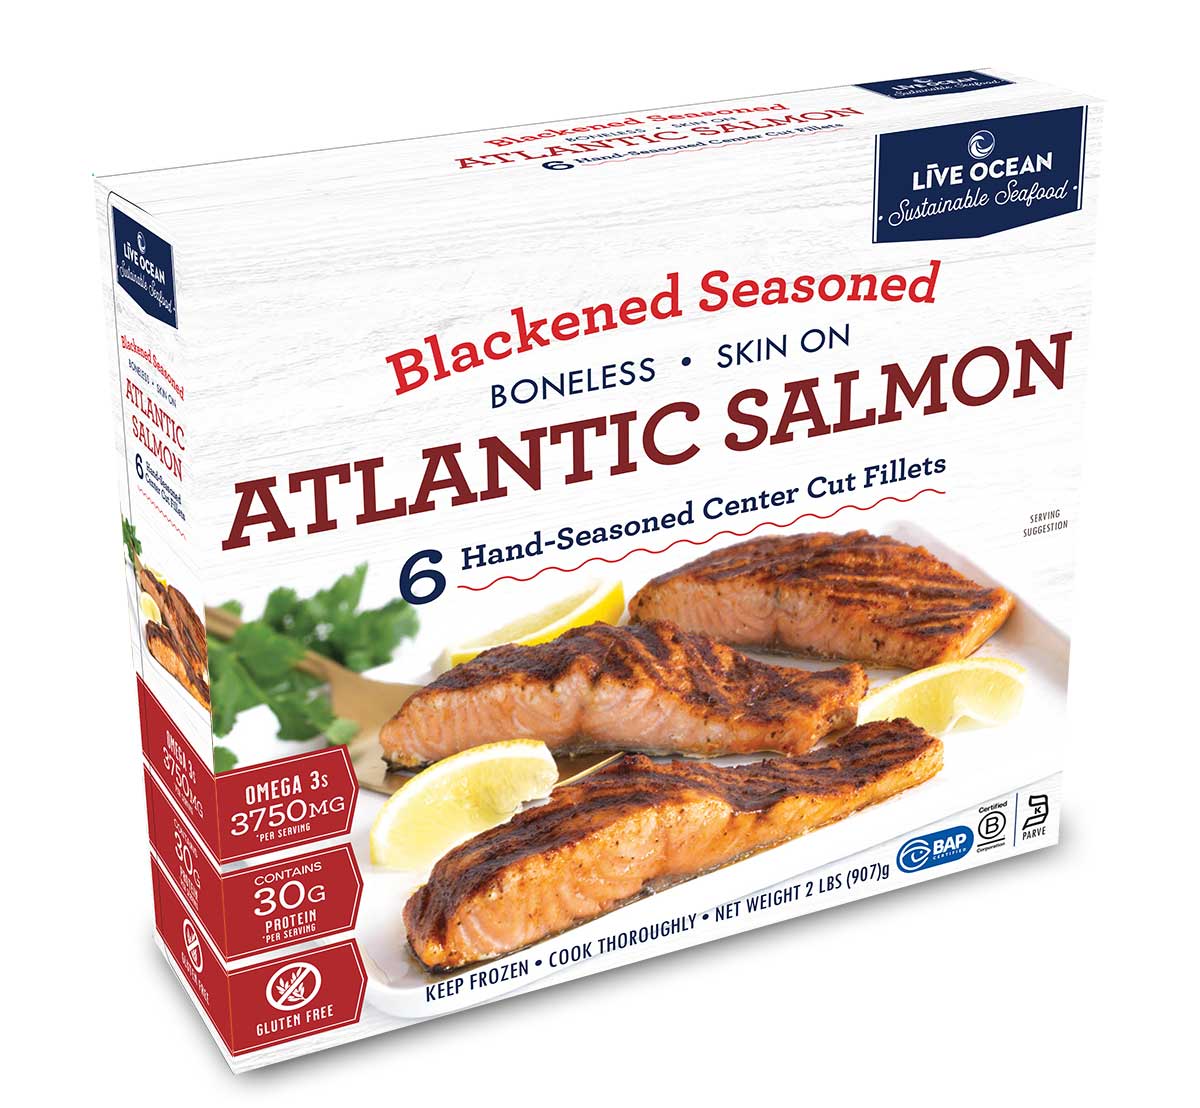 Blackened Salmon Fillets - frozen, boneless